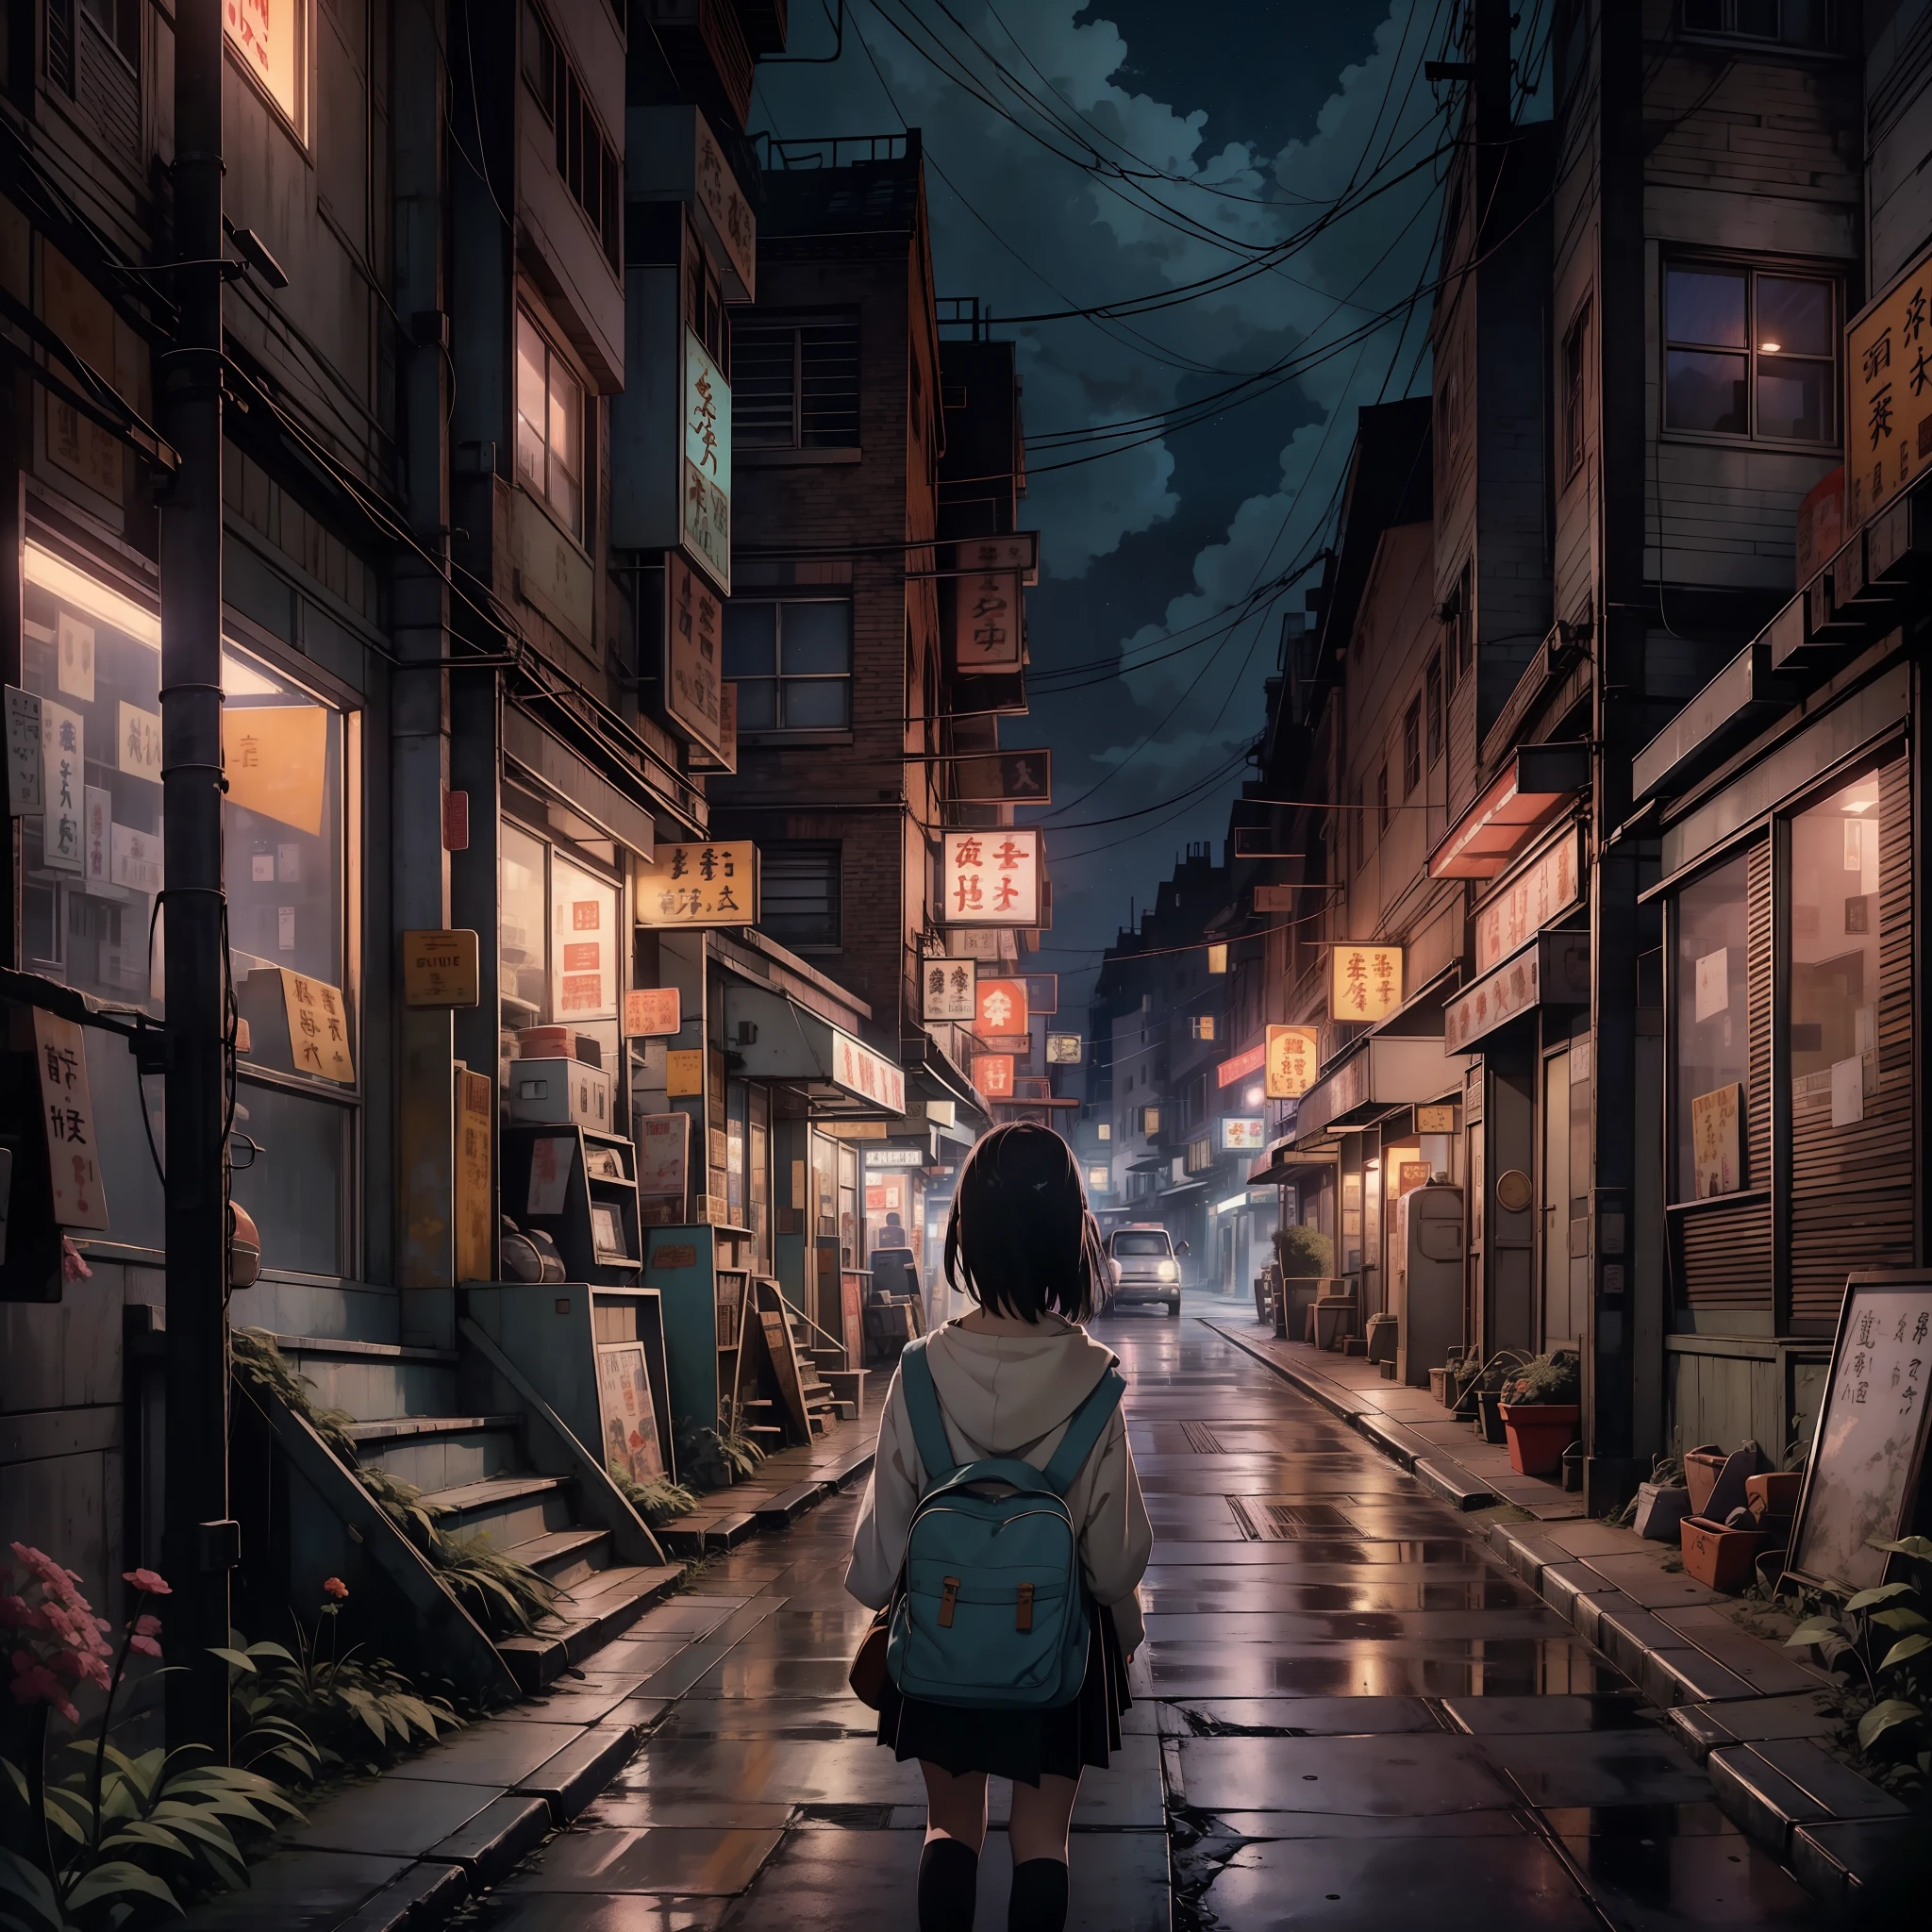 Ein nostalgisches digitales Gemälde, inspiriert von der bezaubernden Welt von Studio Ghibli. Das Kunstwerk zeigt eine charmante, Kleinstadtstraße bei Nacht, ein Gefühl der Ruhe und des Staunens ausstrahlend. Die Bühne ist bereit für einen filmischen Moment, erinnert an eine Szene aus einem Ghibli-Film. In der Zusammensetzung, ein einsames Mädchen der Mittelschule steht in Gedanken versunken, mit dem Rücken zum Betrachter, einen Hauch von Melancholie ausstrahlend. Die Welt um sie herum ist wunderschön detailliert, die Essenz einer nostalgischen Atmosphäre einfangen. Der Himmel darüber ist mit einem atemberaubenden Sternenhimmel geschmückt, weckt ein Gefühl wehmütiger Erinnerung, das bei Zuschauern aller Altersgruppen Anklang findet.